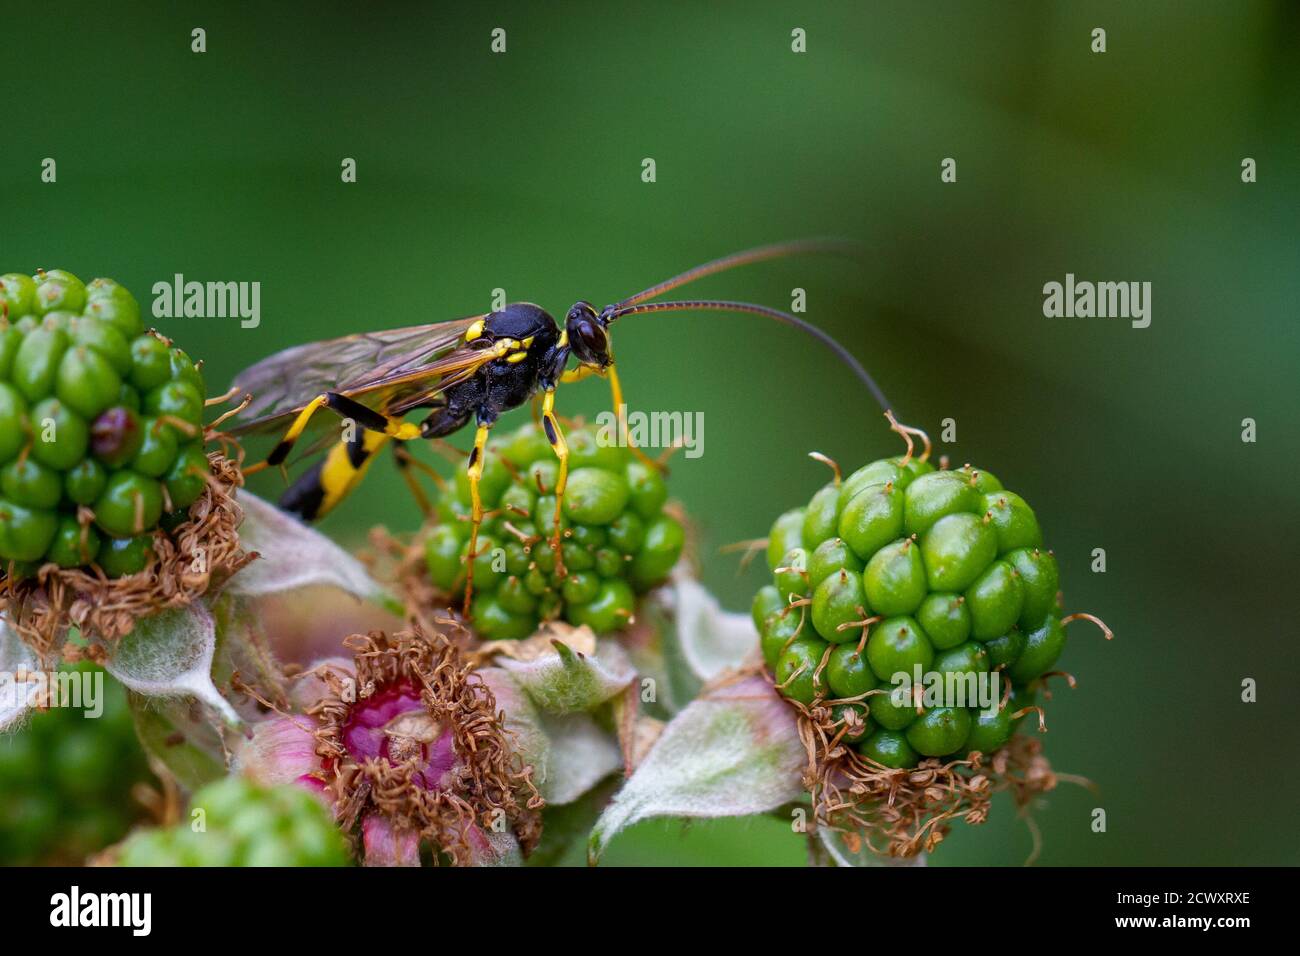 Parasitic wasp, amblyteles armatorius, perched on unripe blackberries, UK wildlife macro, West Yorkshire Stock Photo